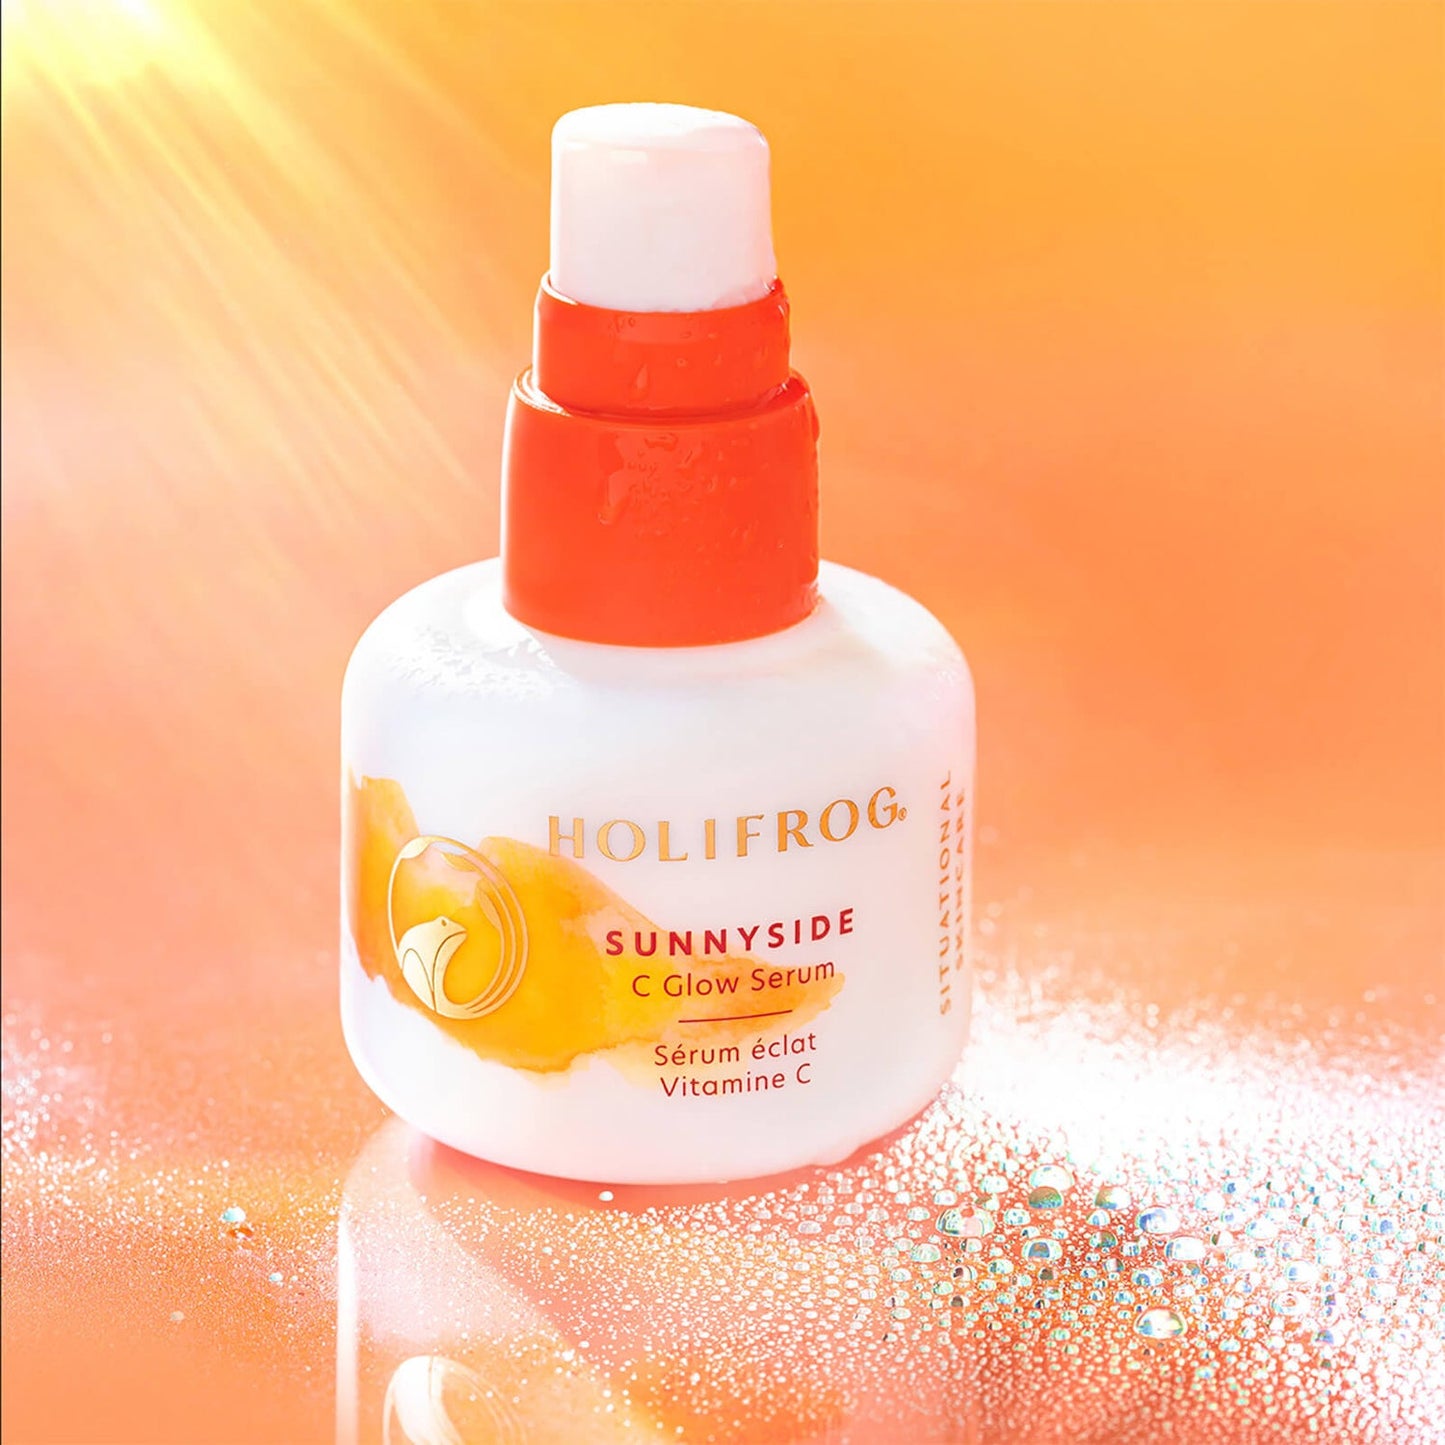 Sunnyside C Glow Serum with 15% Vitamin C and 3% Tranexamic Acid